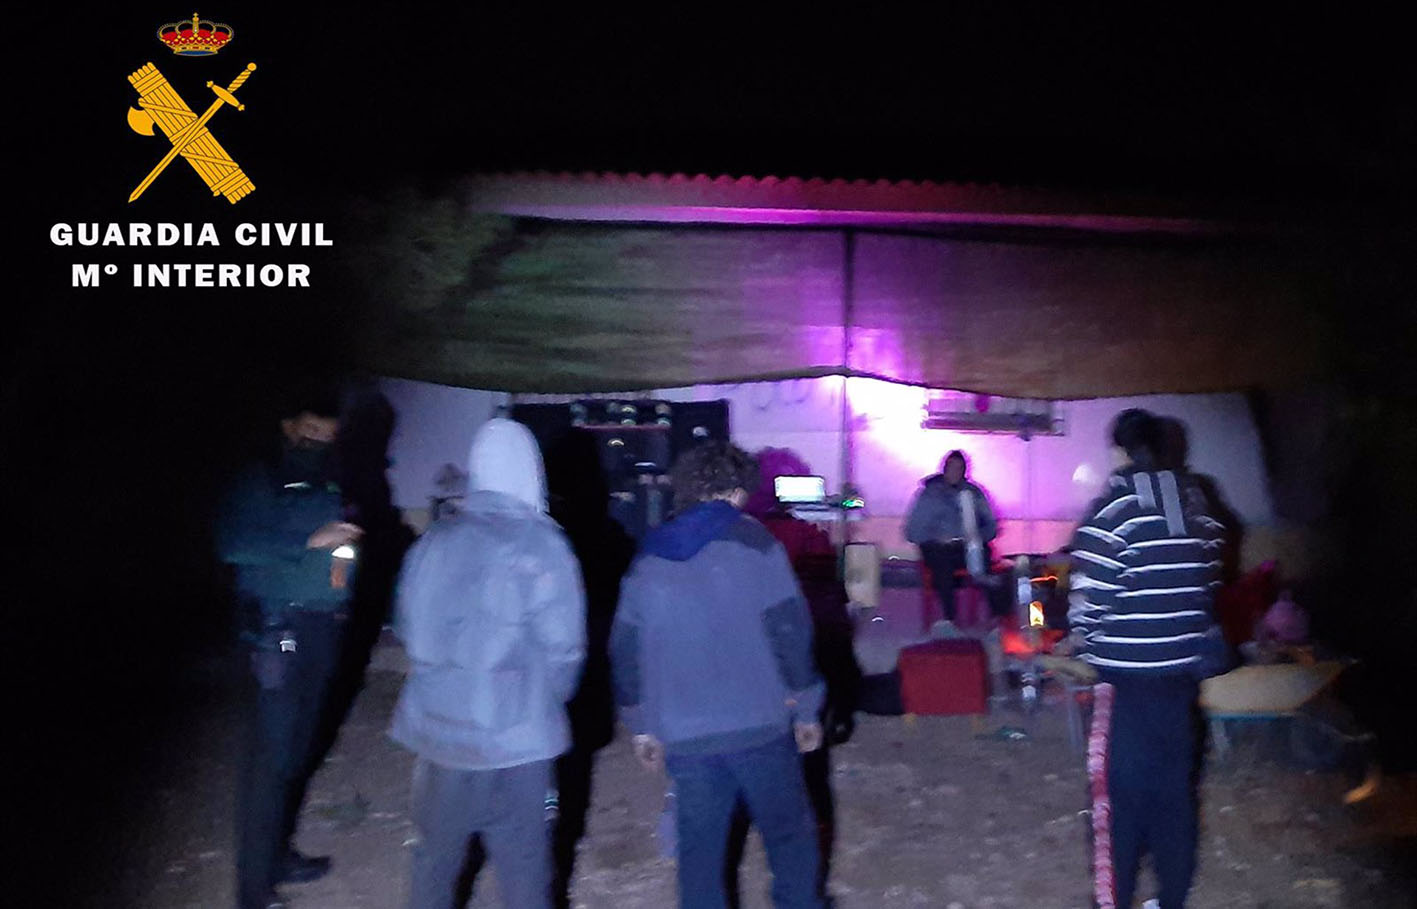 La fiesta se celebraba en una casa de campo y había 10 personas cuando llegó la Guardia Civil.